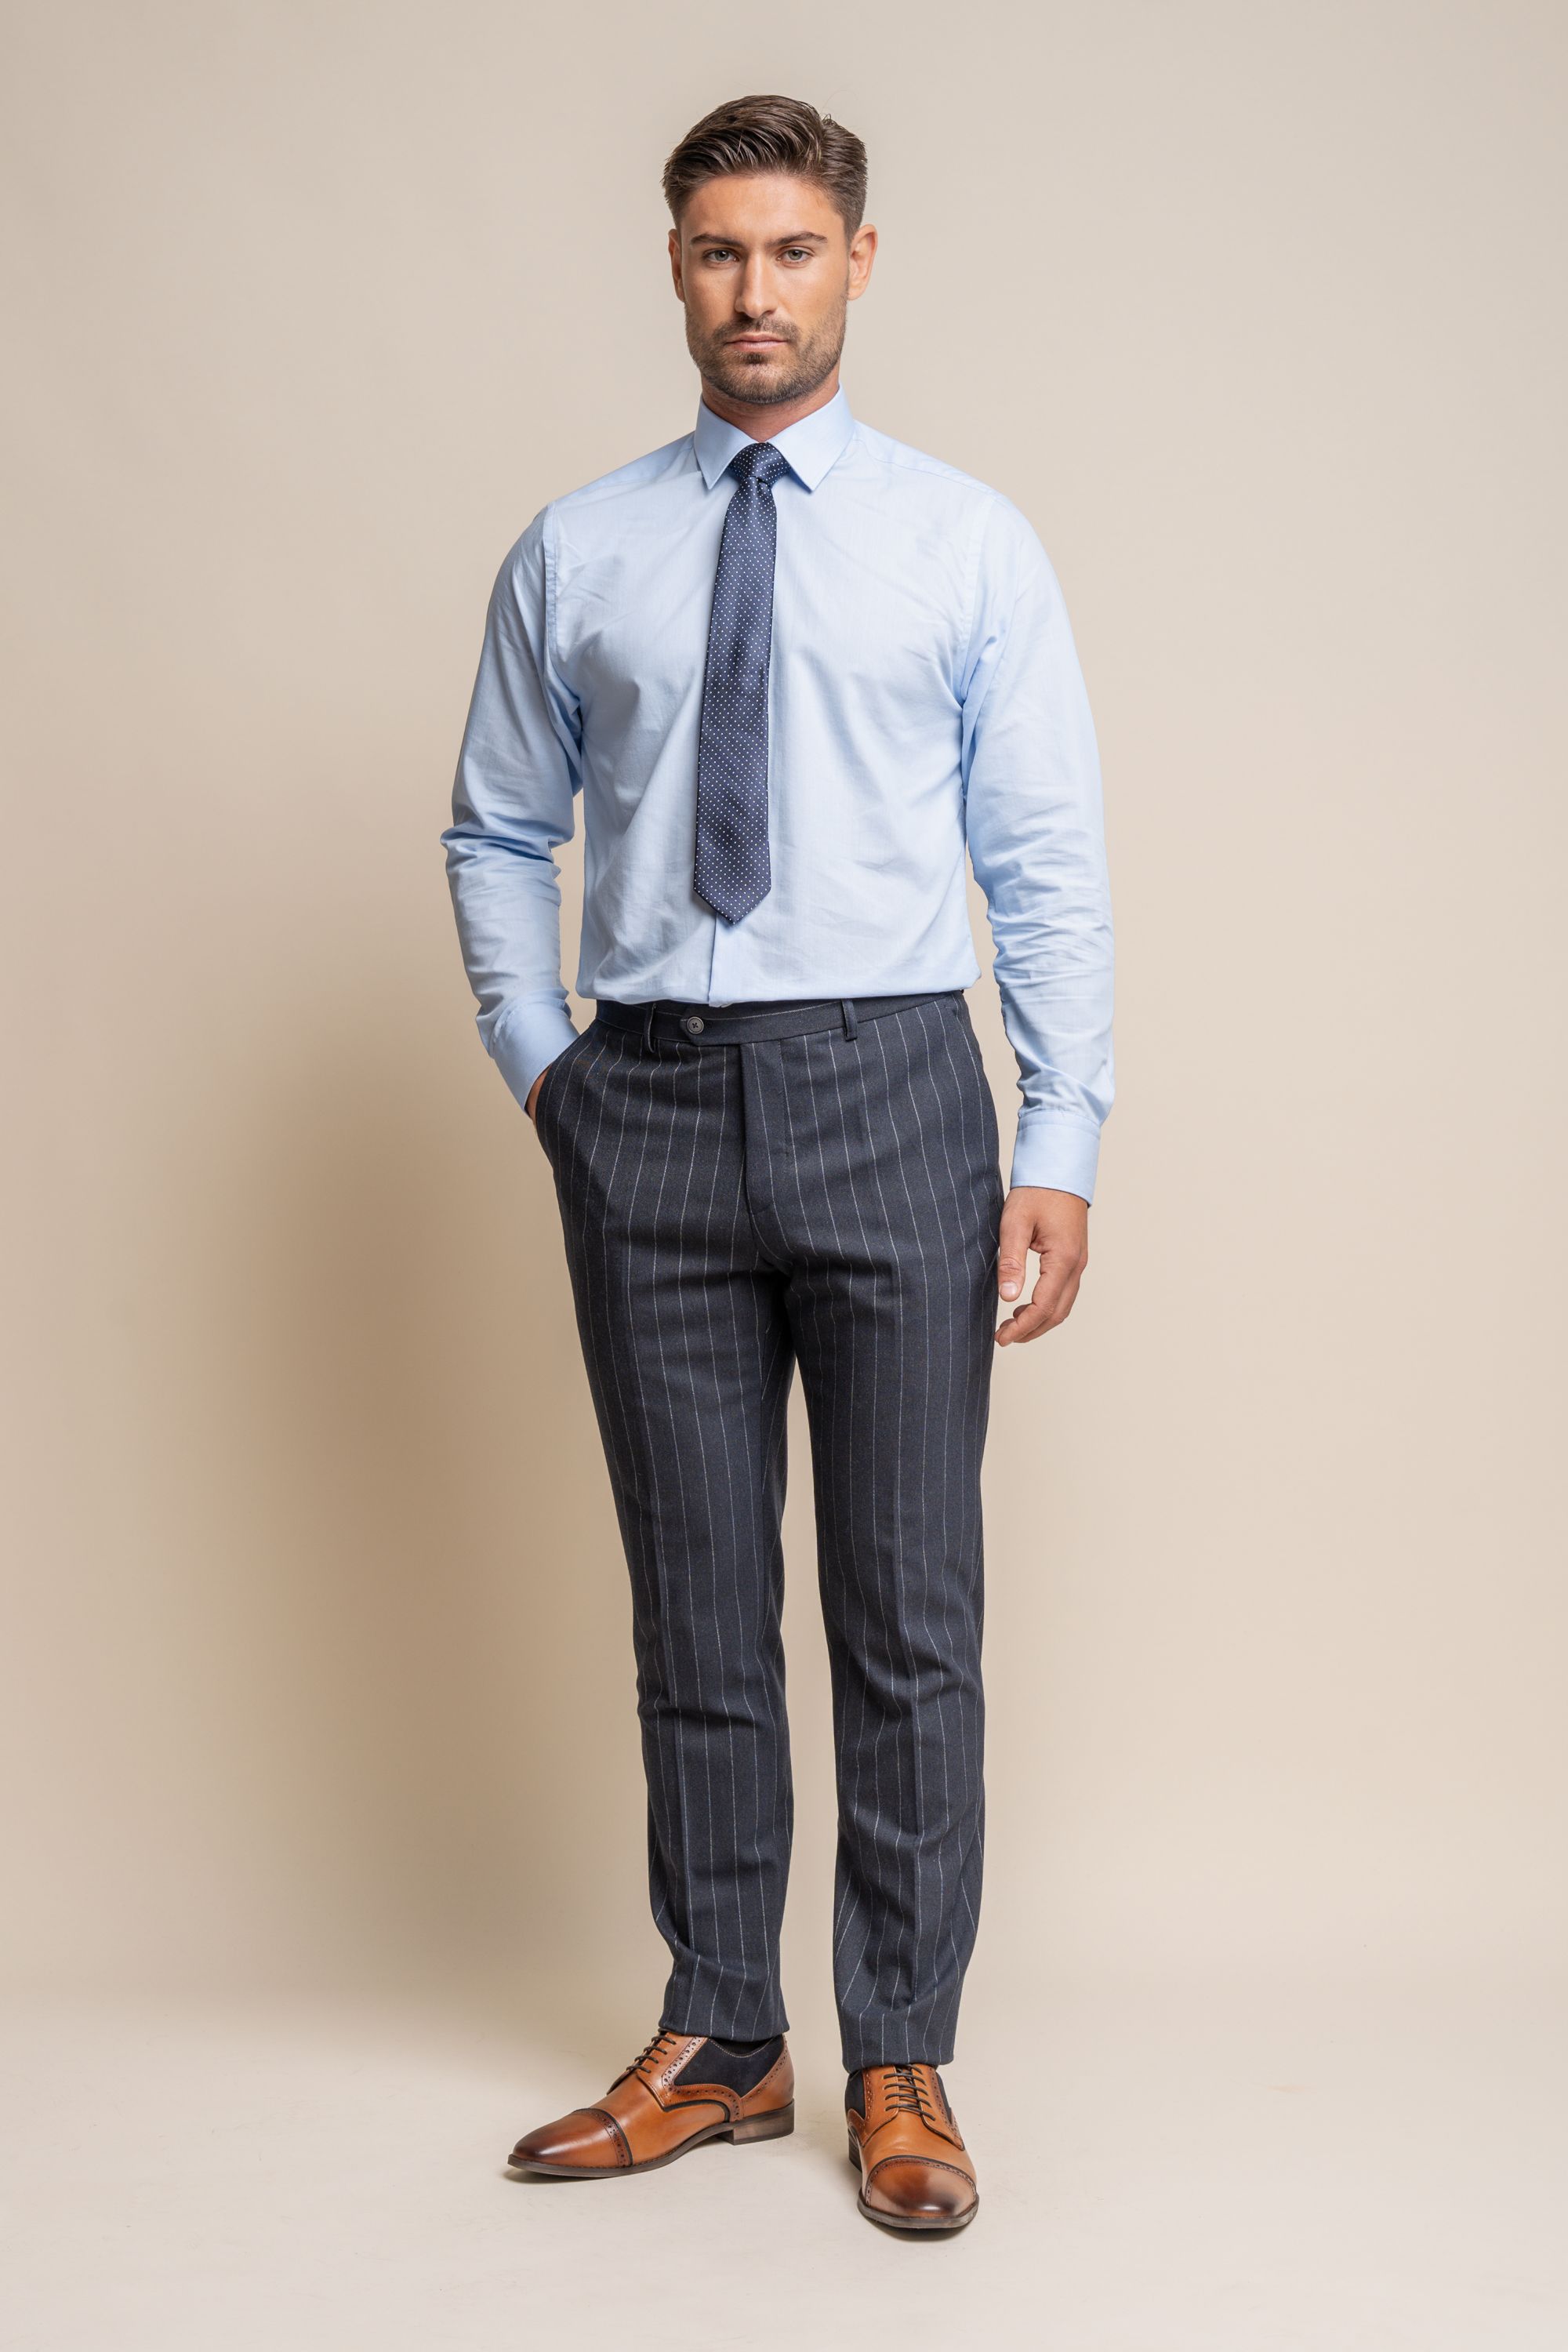 Men's Pinstripe Slim Fit Navy Blue Suit -  Invincible